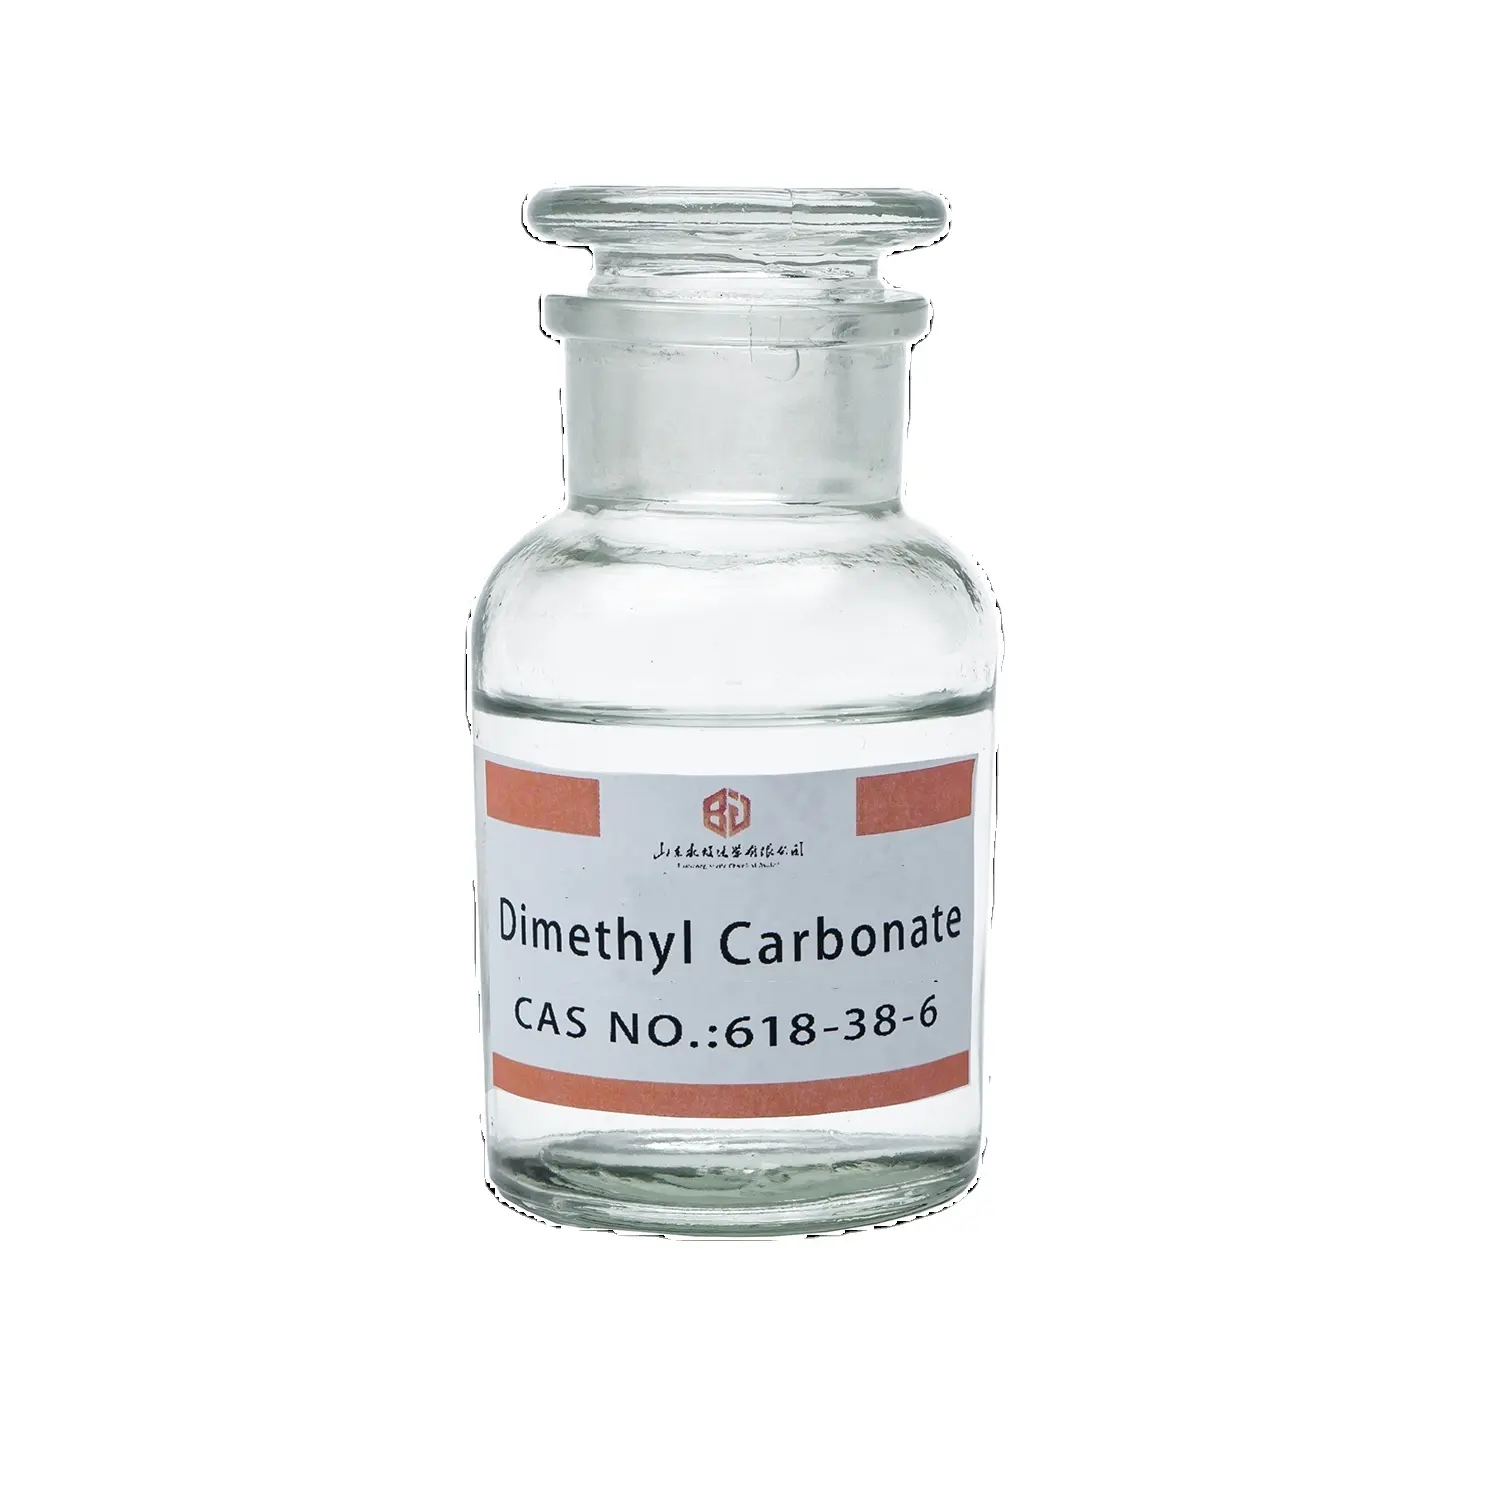 كربونات الديميثيل CAS 616-38-6 يستخدم في إنتاج كربونات البولي وأيثار البولي يوريثين والبولي إيثير